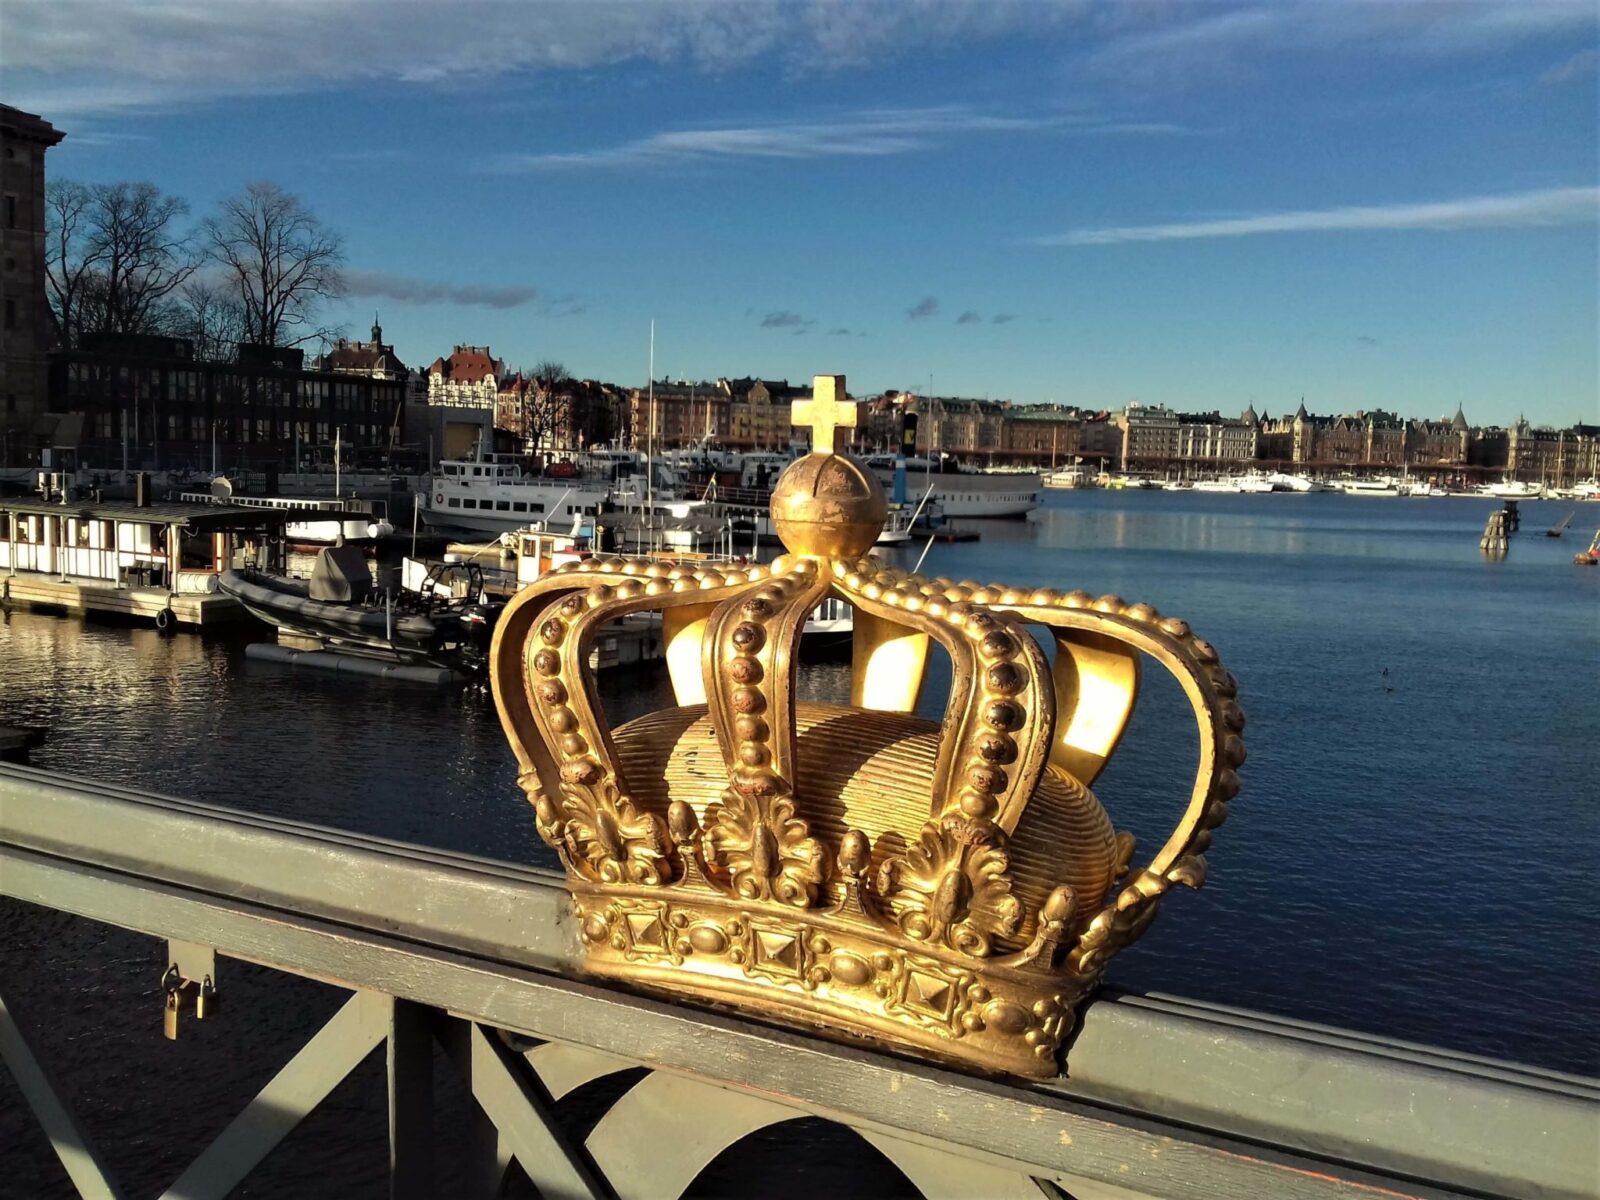 Korona na moście, zwiedzanie Sztokholmu